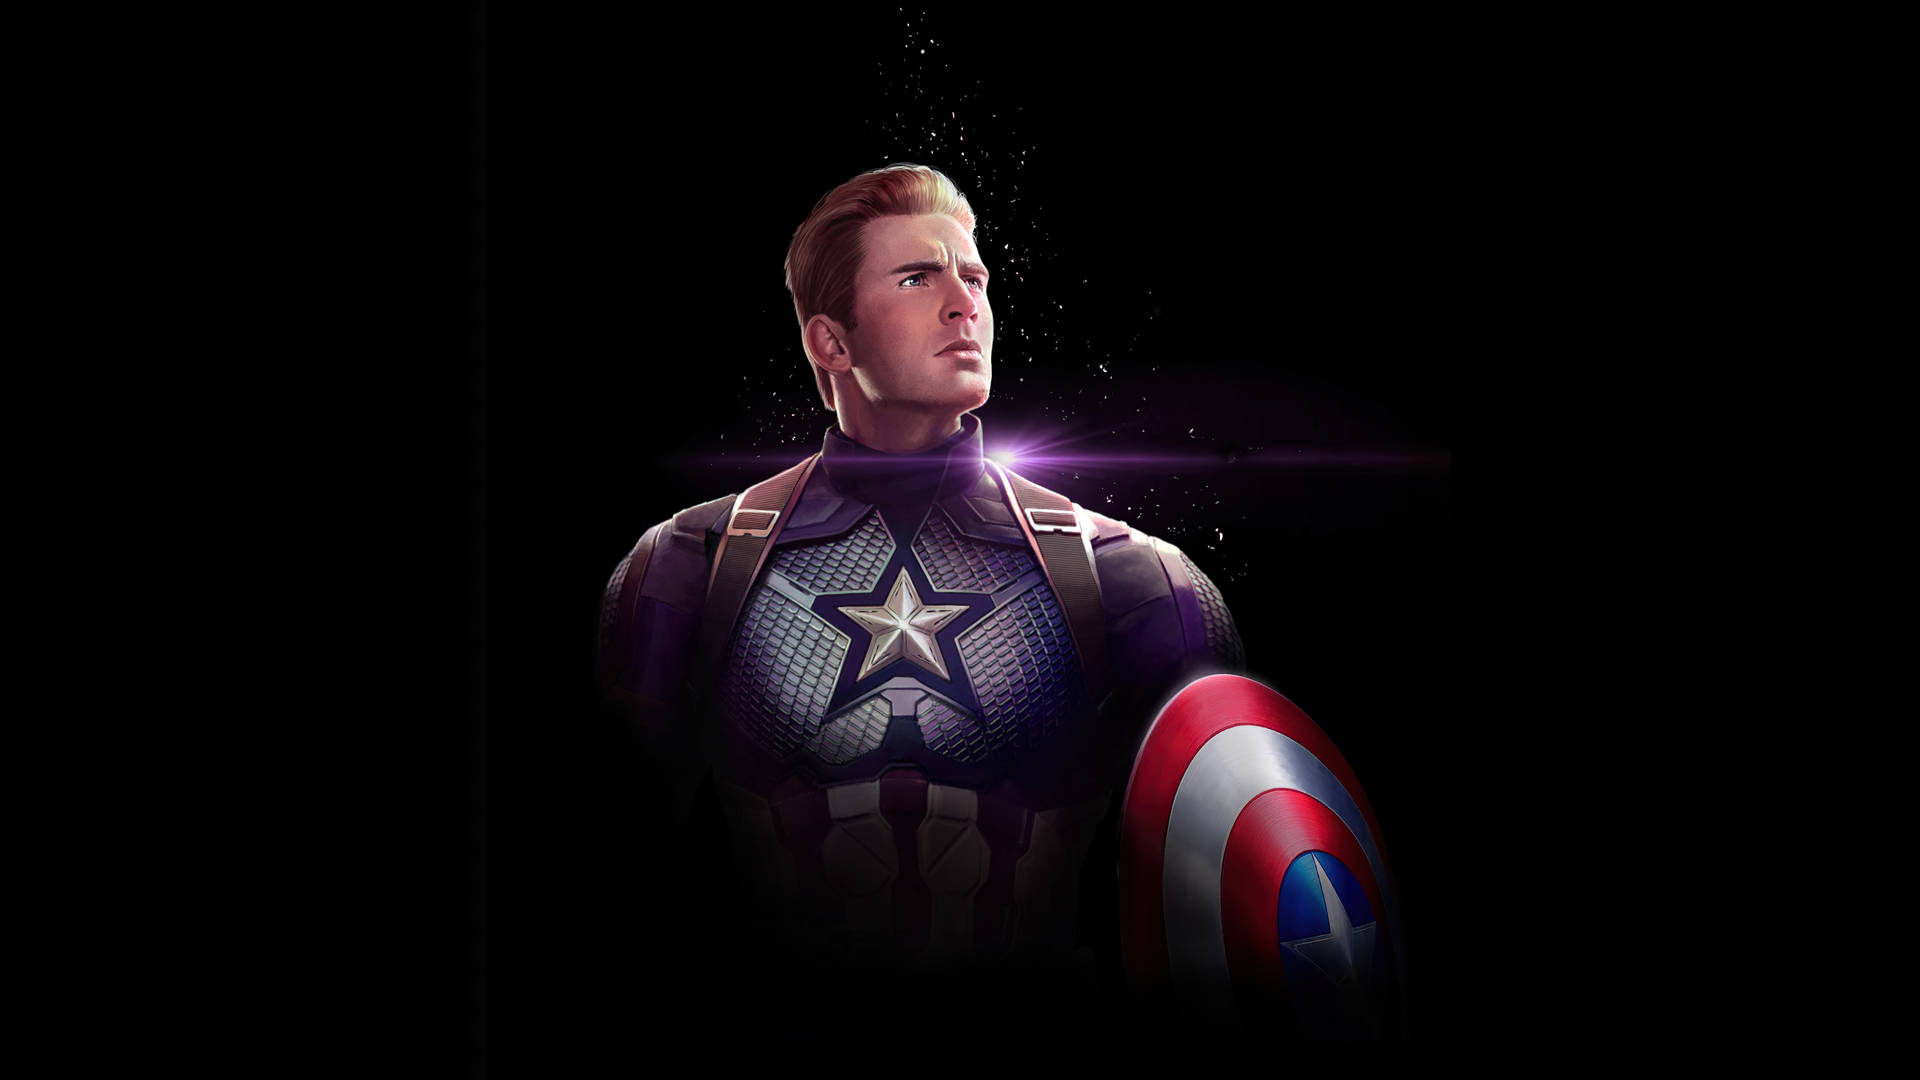 Captain America Superhero Avengers Endgame Background